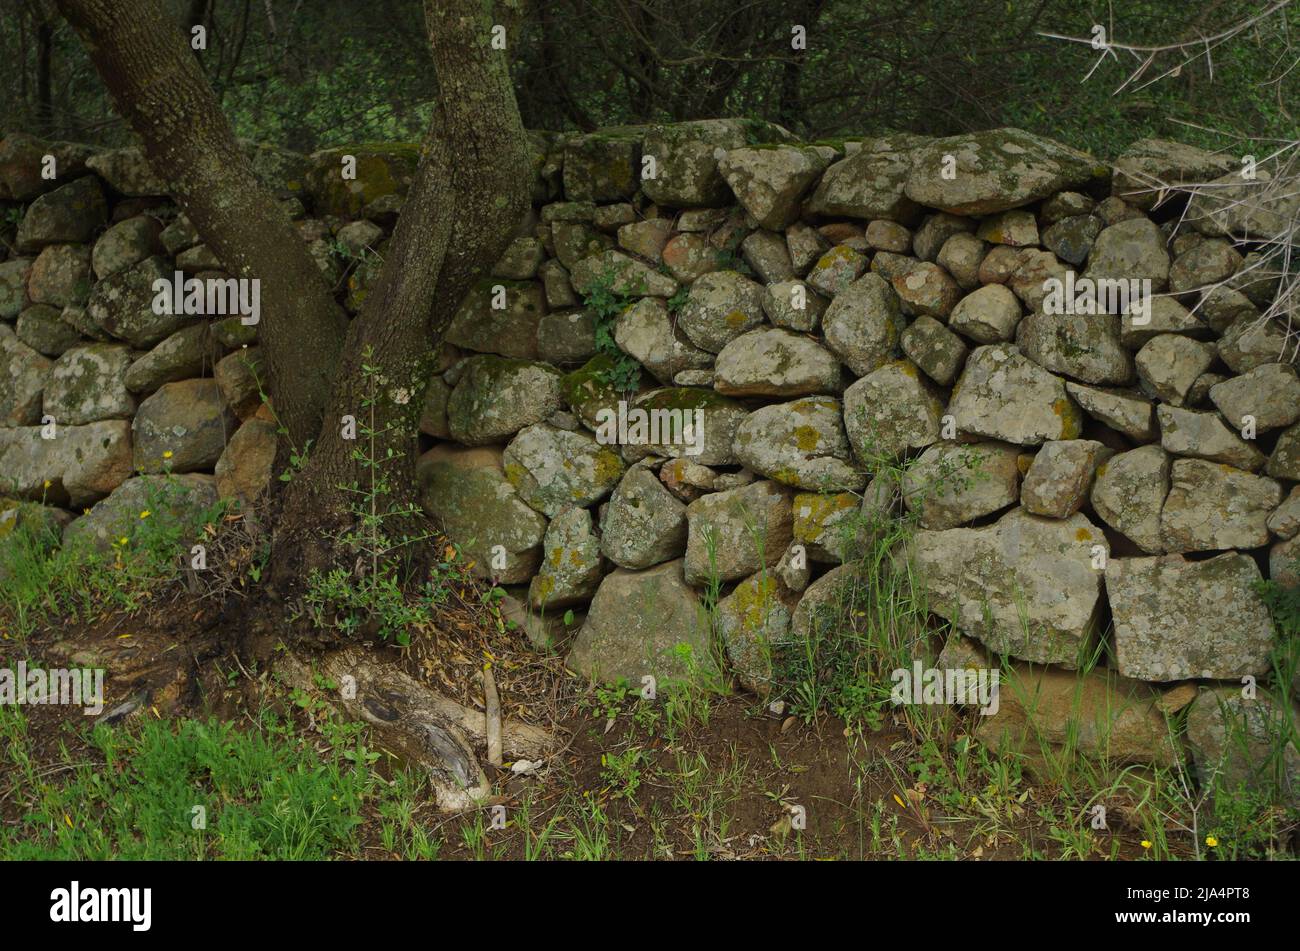 A Ston Wall on Sardinia. Stock Photo